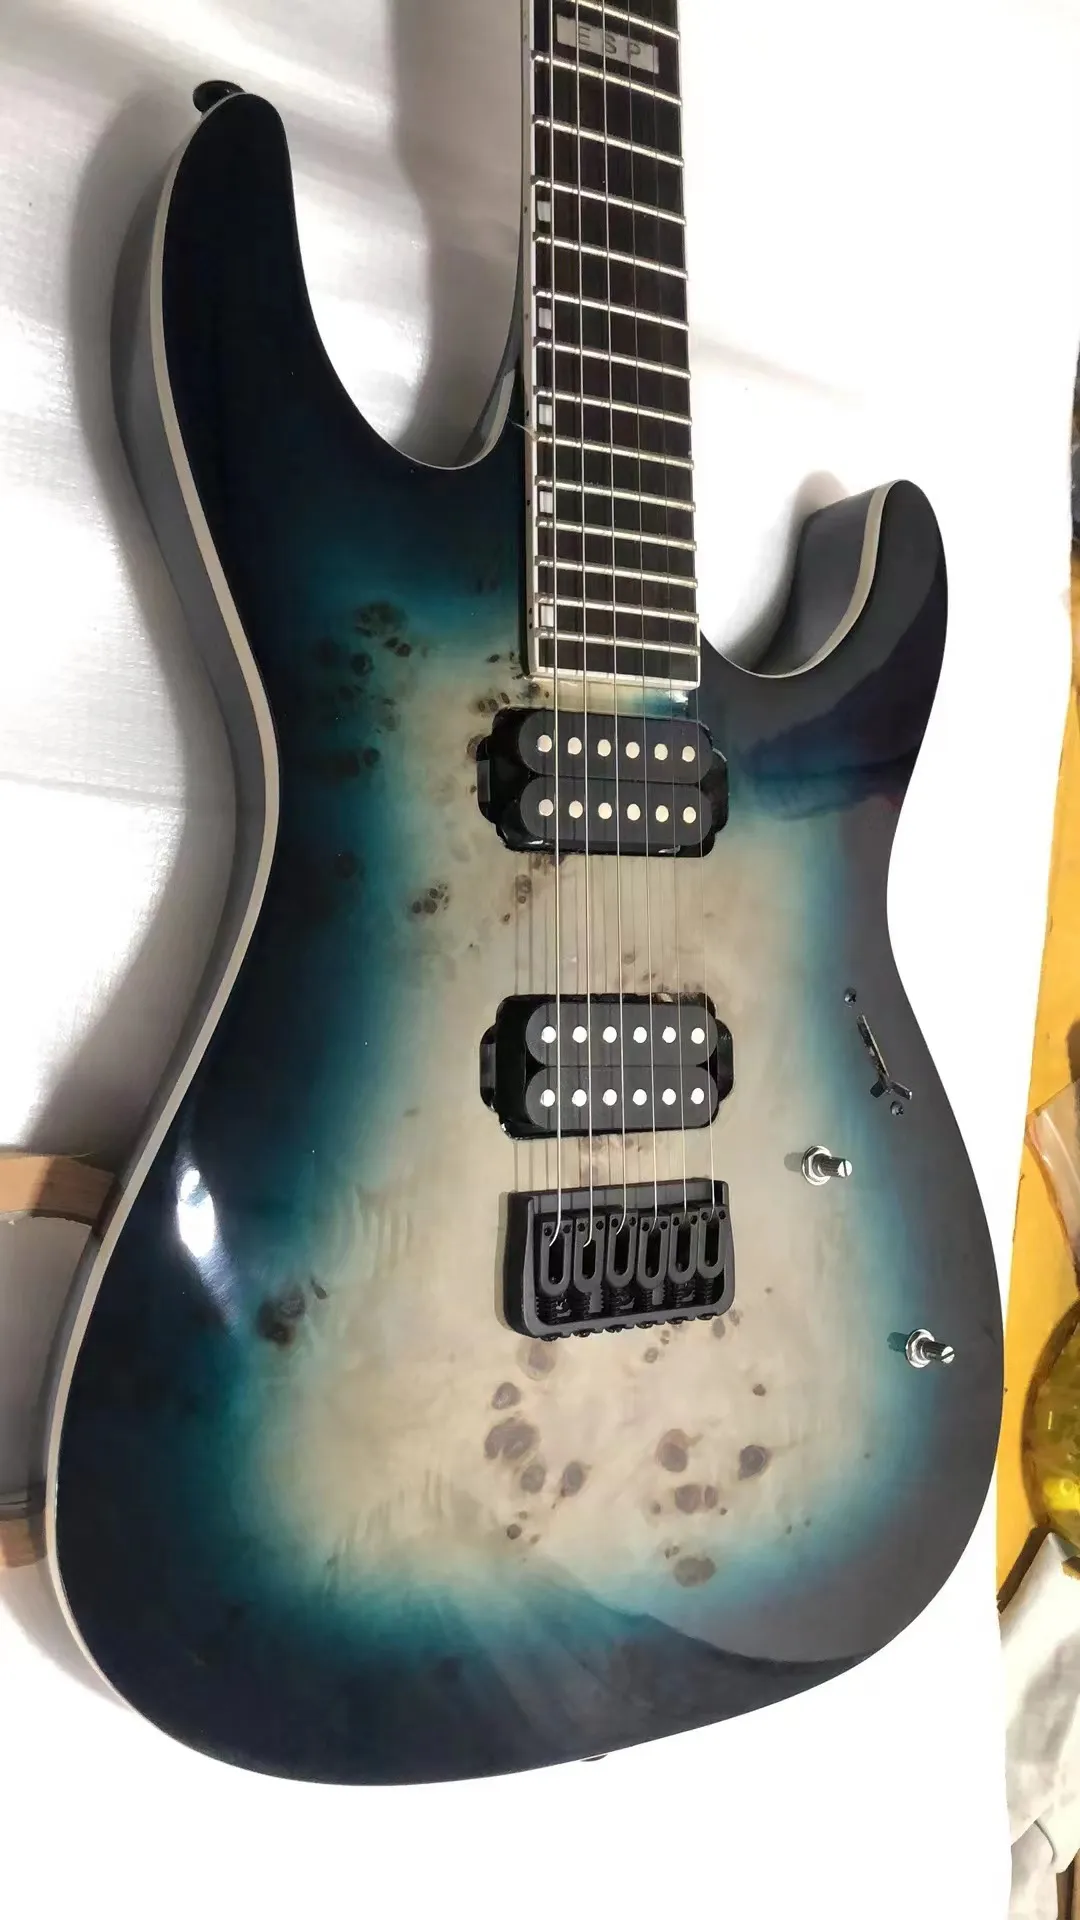 Ome guitare électrique finition corps en acajou bleu matériel noir